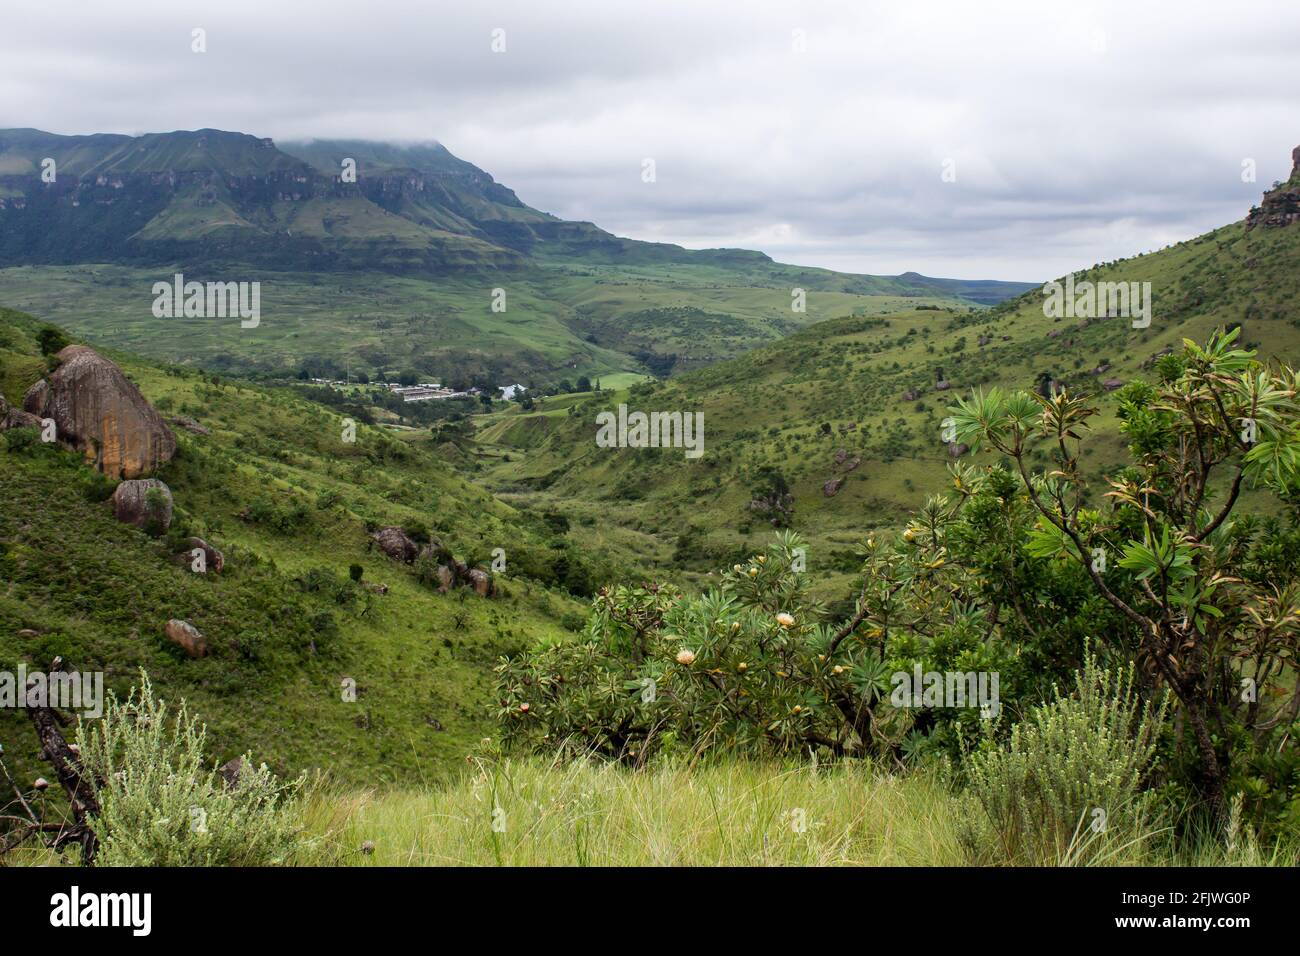 Vue sur un complexe de vacances, niché dans une vallée dans les montagnes du Drakensberg en Afrique du Sud, avec le sucrier protees au premier plan Banque D'Images